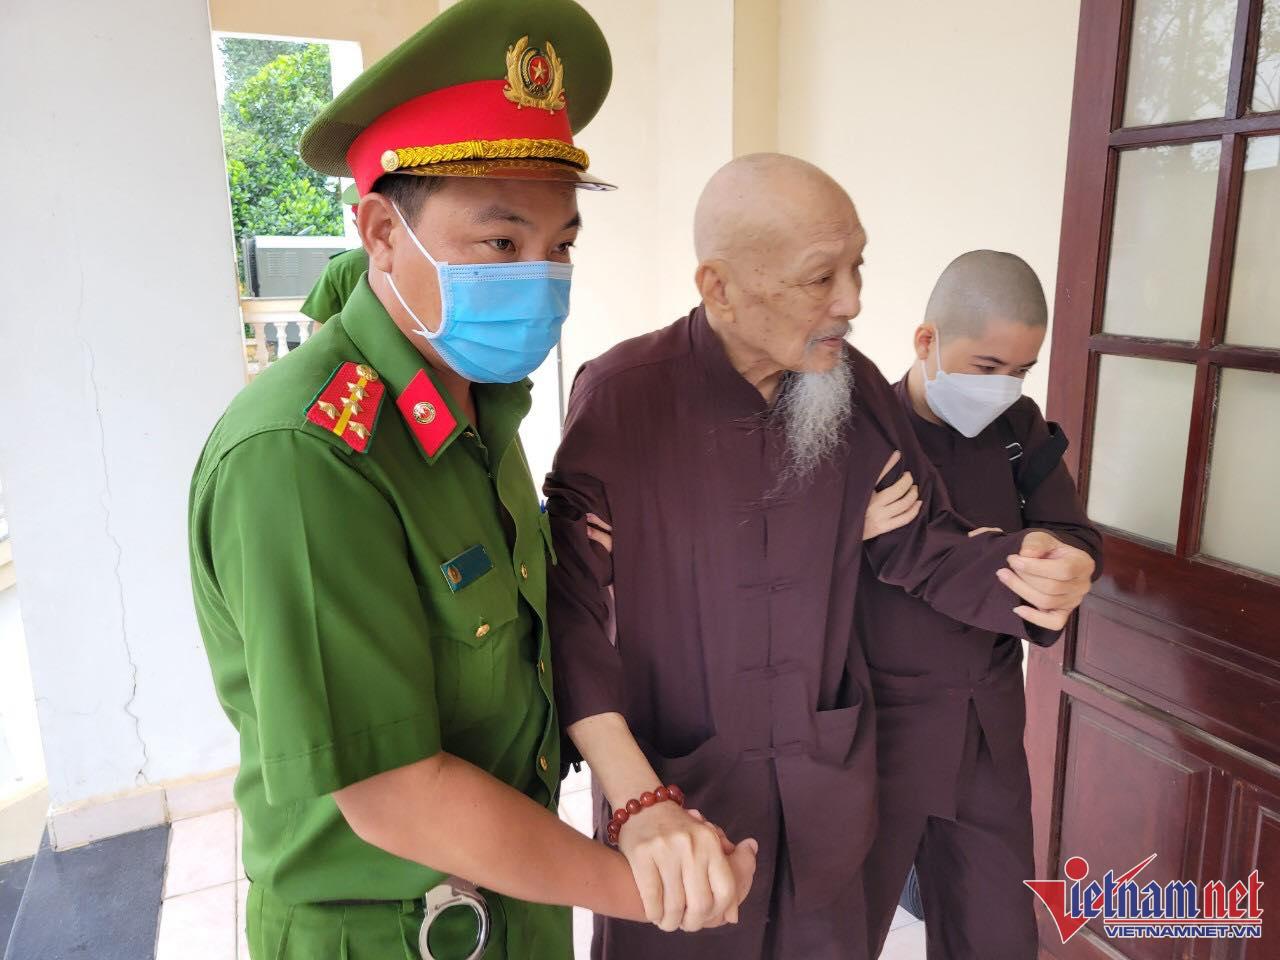 An ninh nghiêm ngặt phiên xử nhóm người ở Tịnh thất Bồng Lai-2